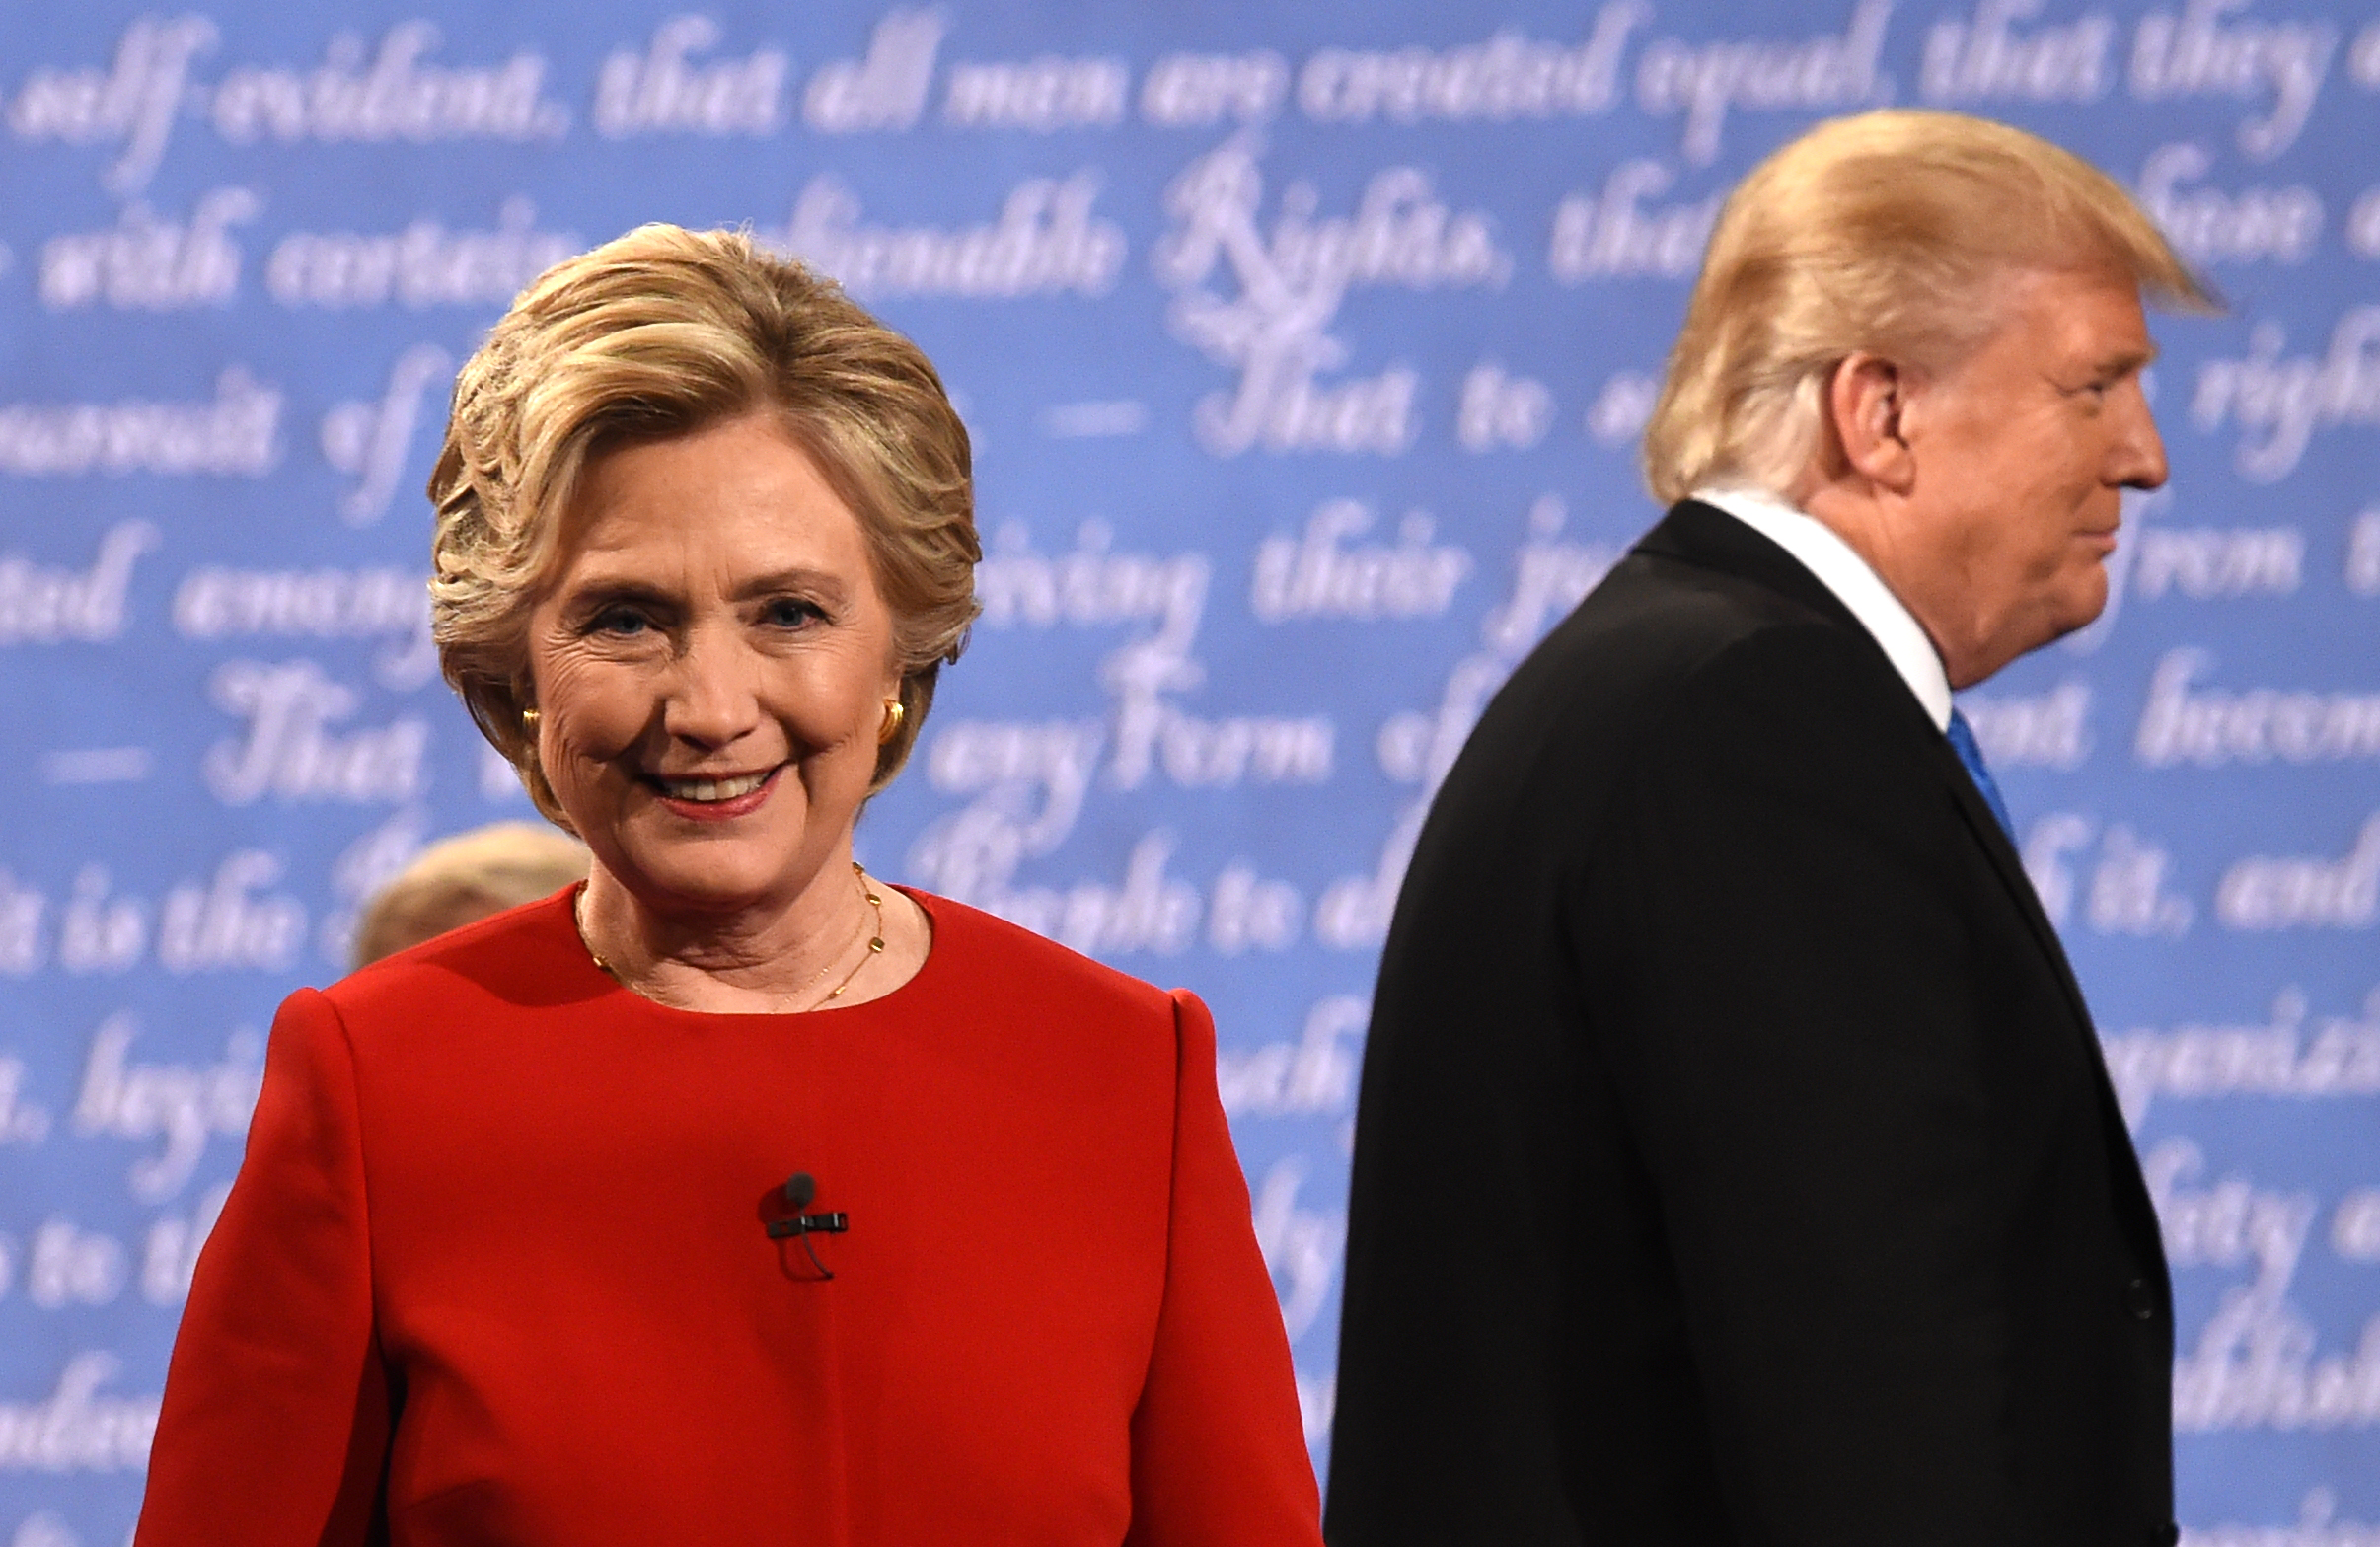 TV-Duell: Clinton kühl, Trump hitzig, Moderator tendenziös – die große Schlammschlacht blieb aus